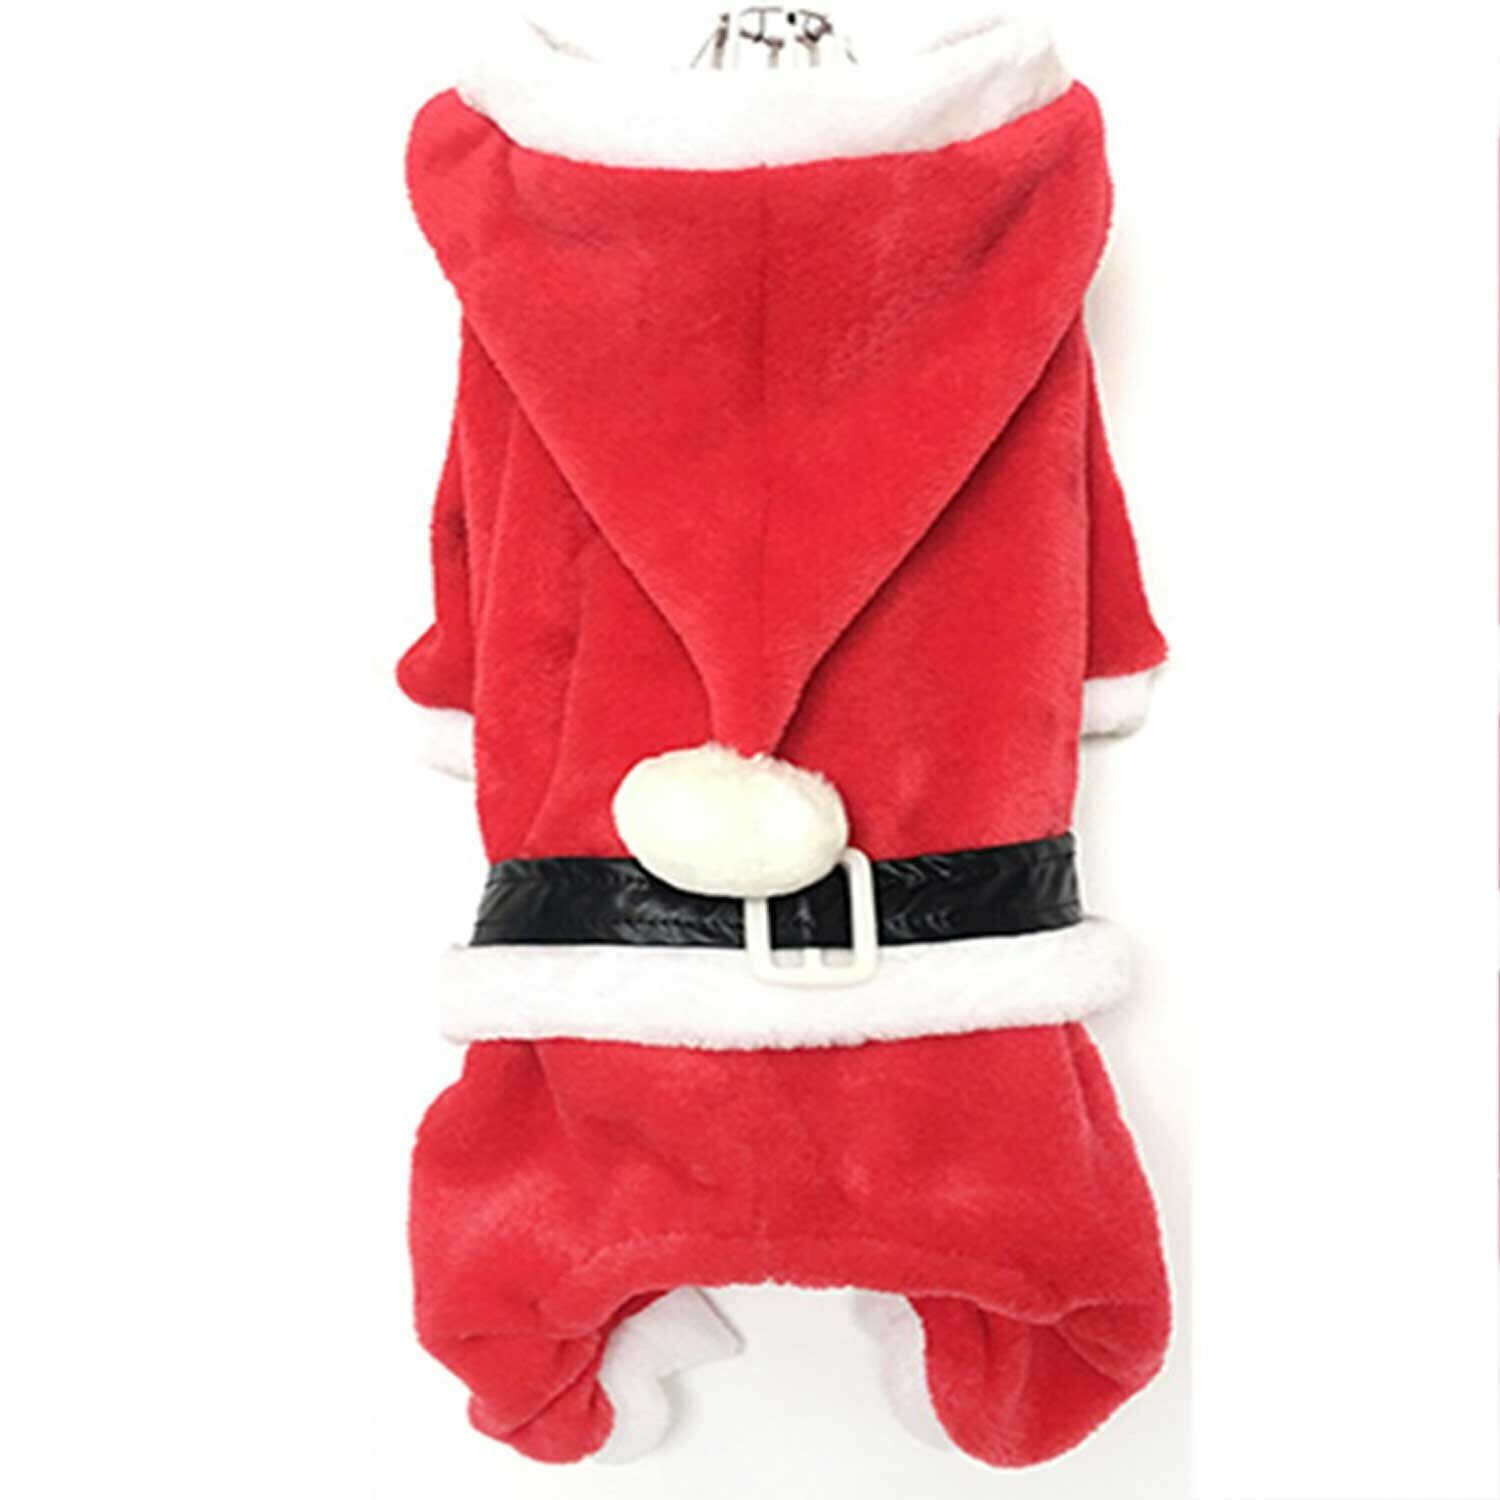 Weihnachtsmantel für Hunde - Nikolaus Kostüm für Hunde